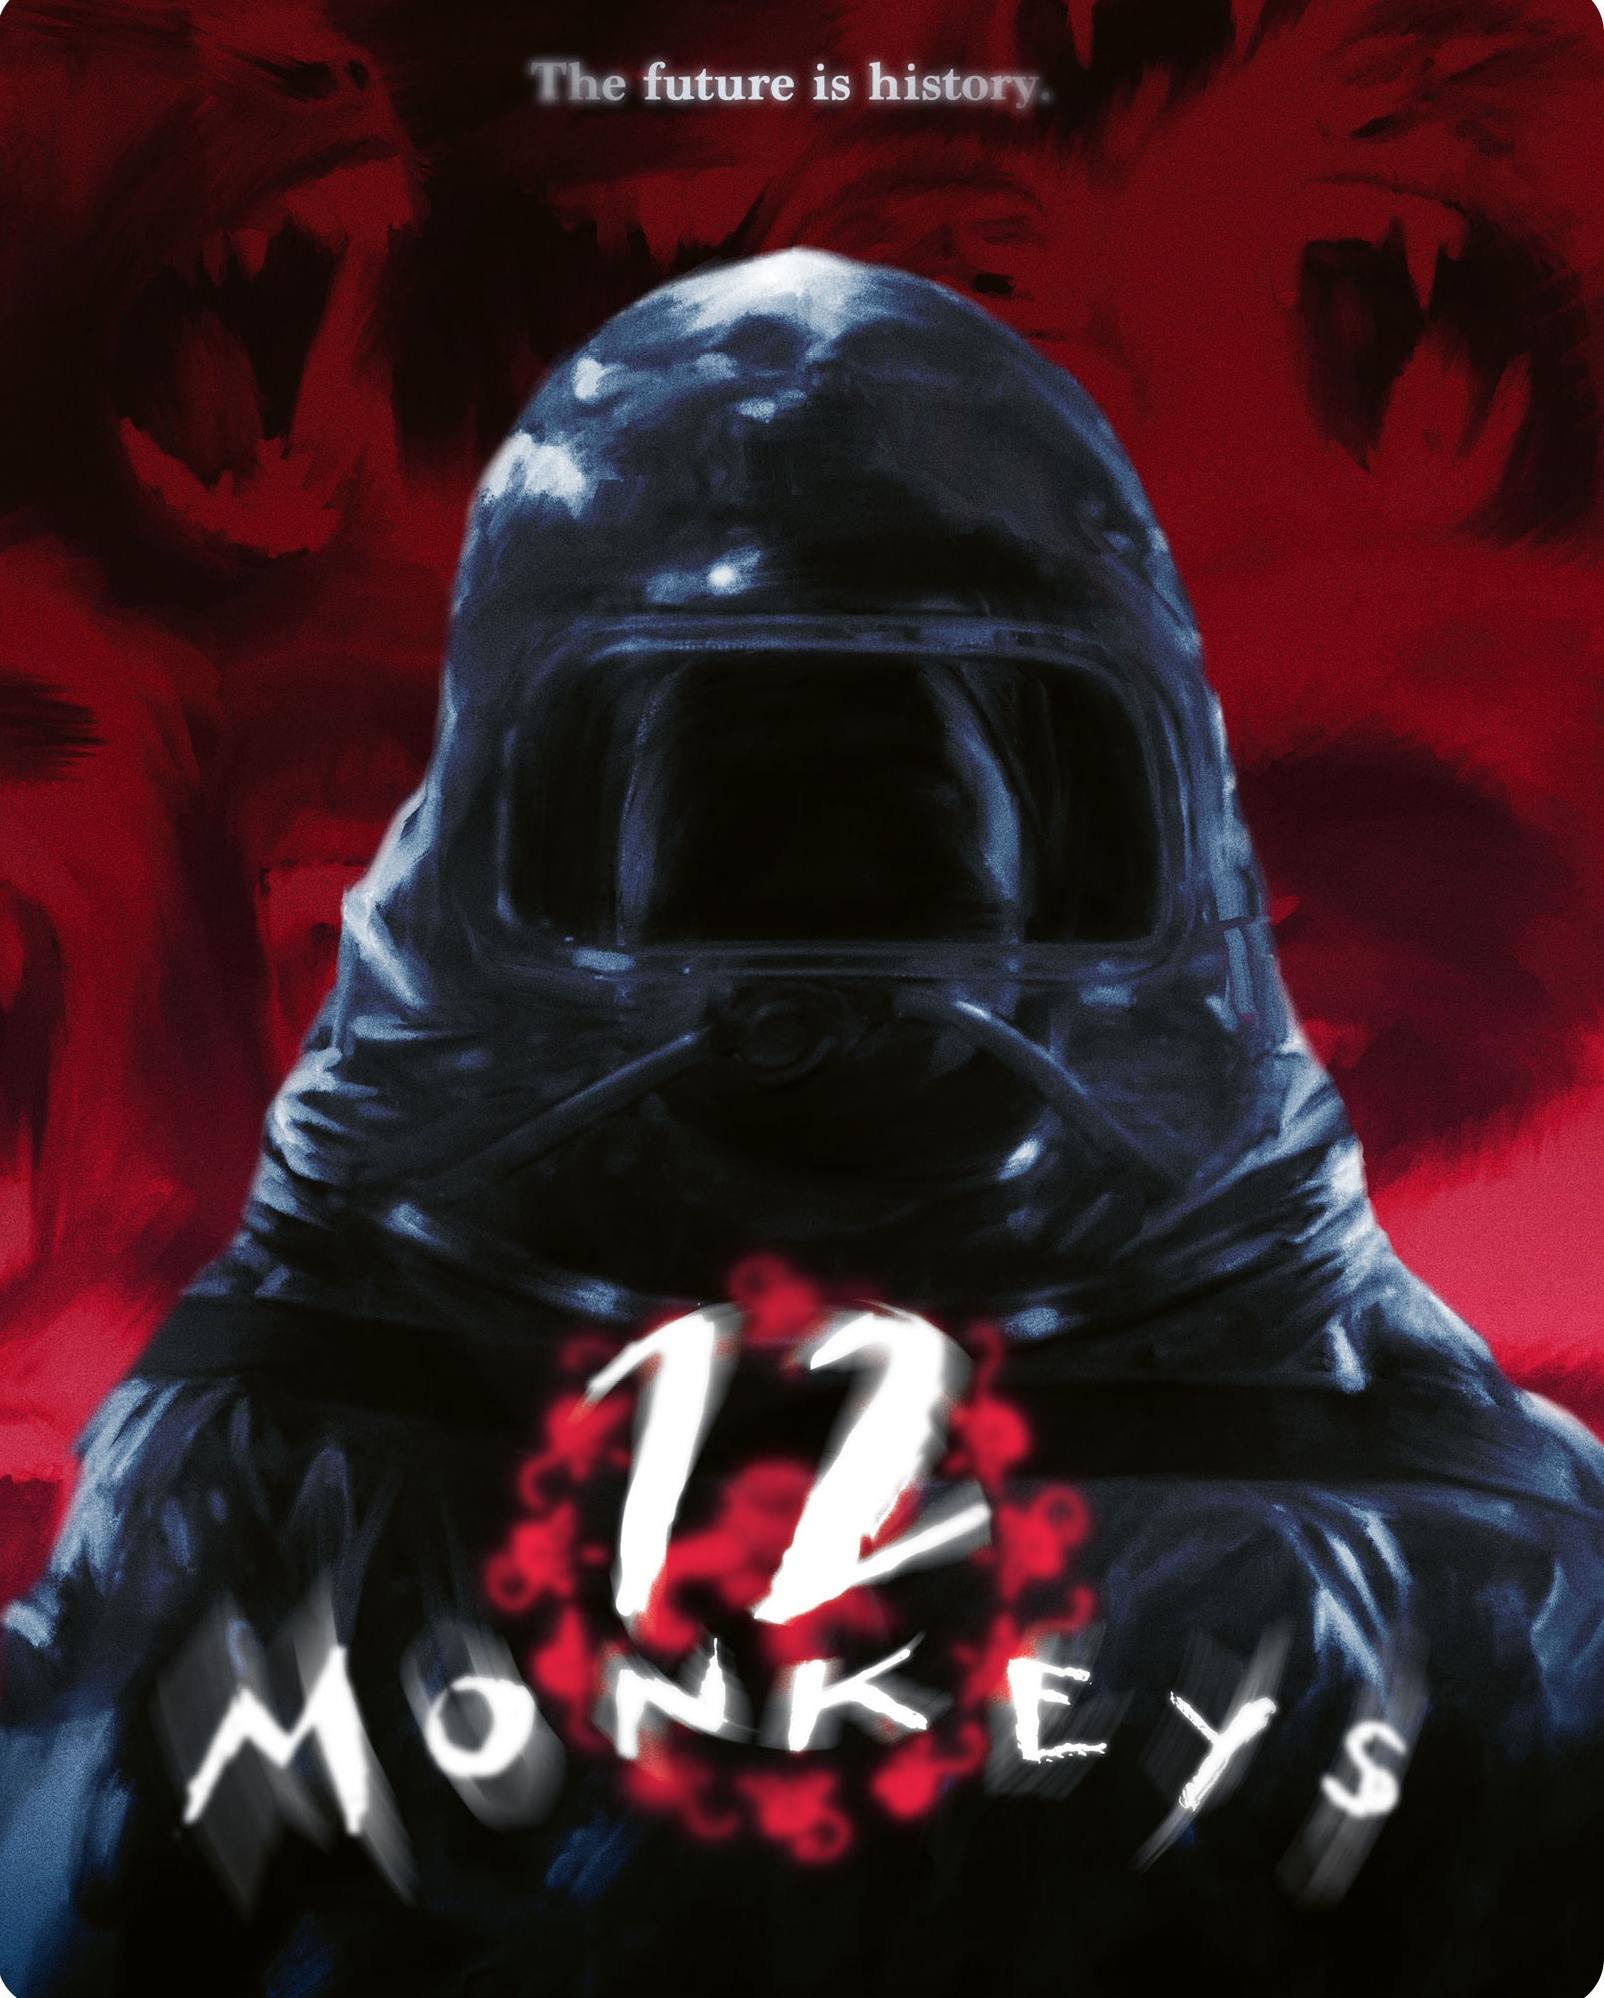 12 Monkeys [Blu-ray] [1995]